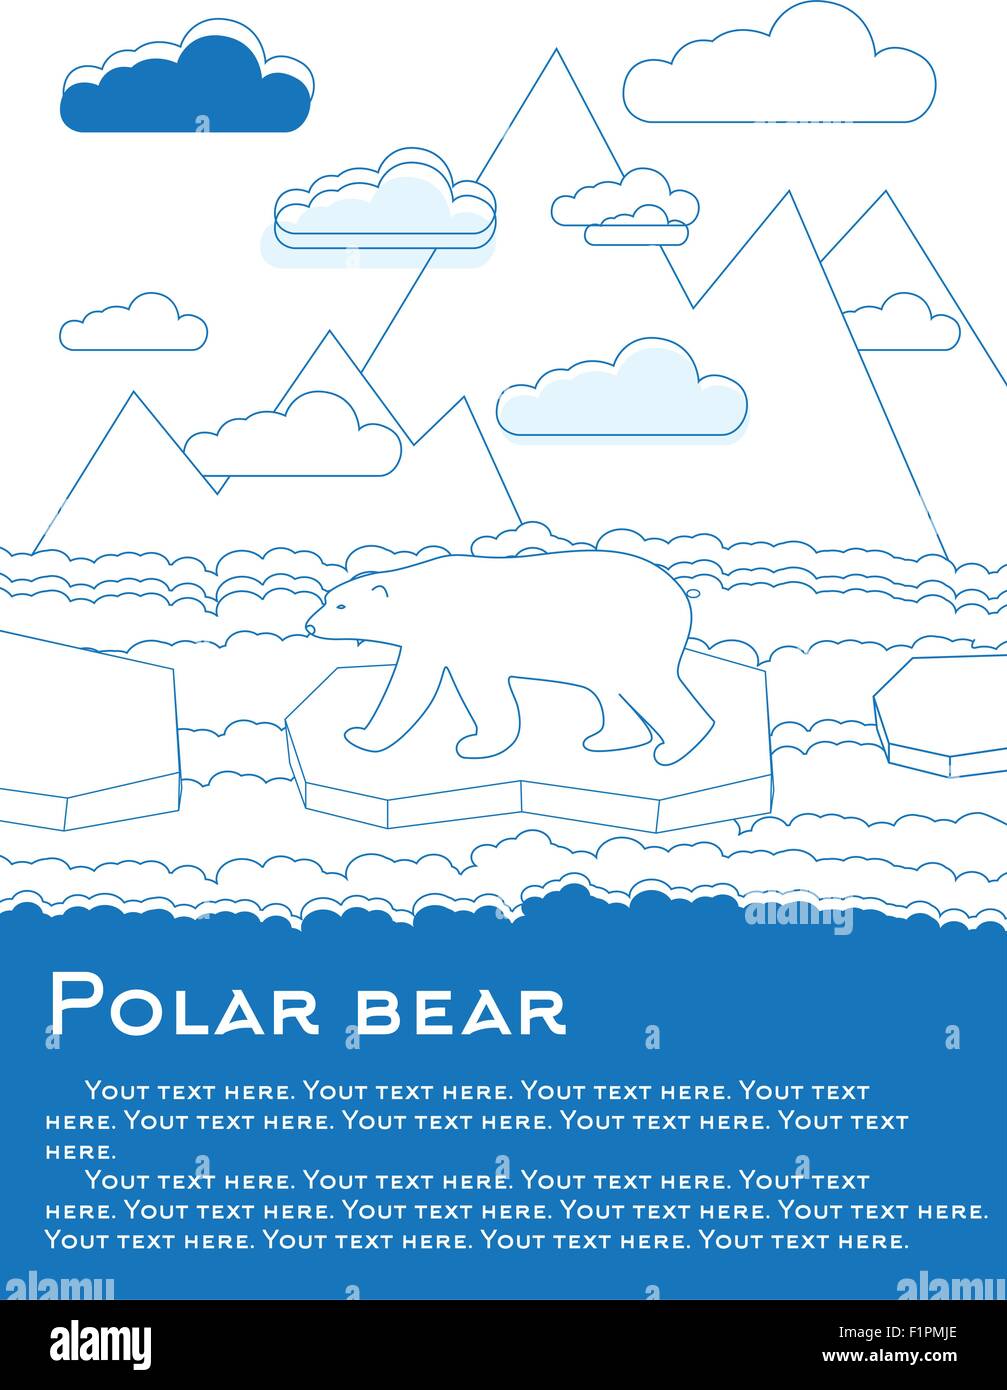 L'ours polaire sur la banquise dans l'océan résultat possible du réchauffement de la Vector illustration pour les magazines ou les journaux Illustration de Vecteur